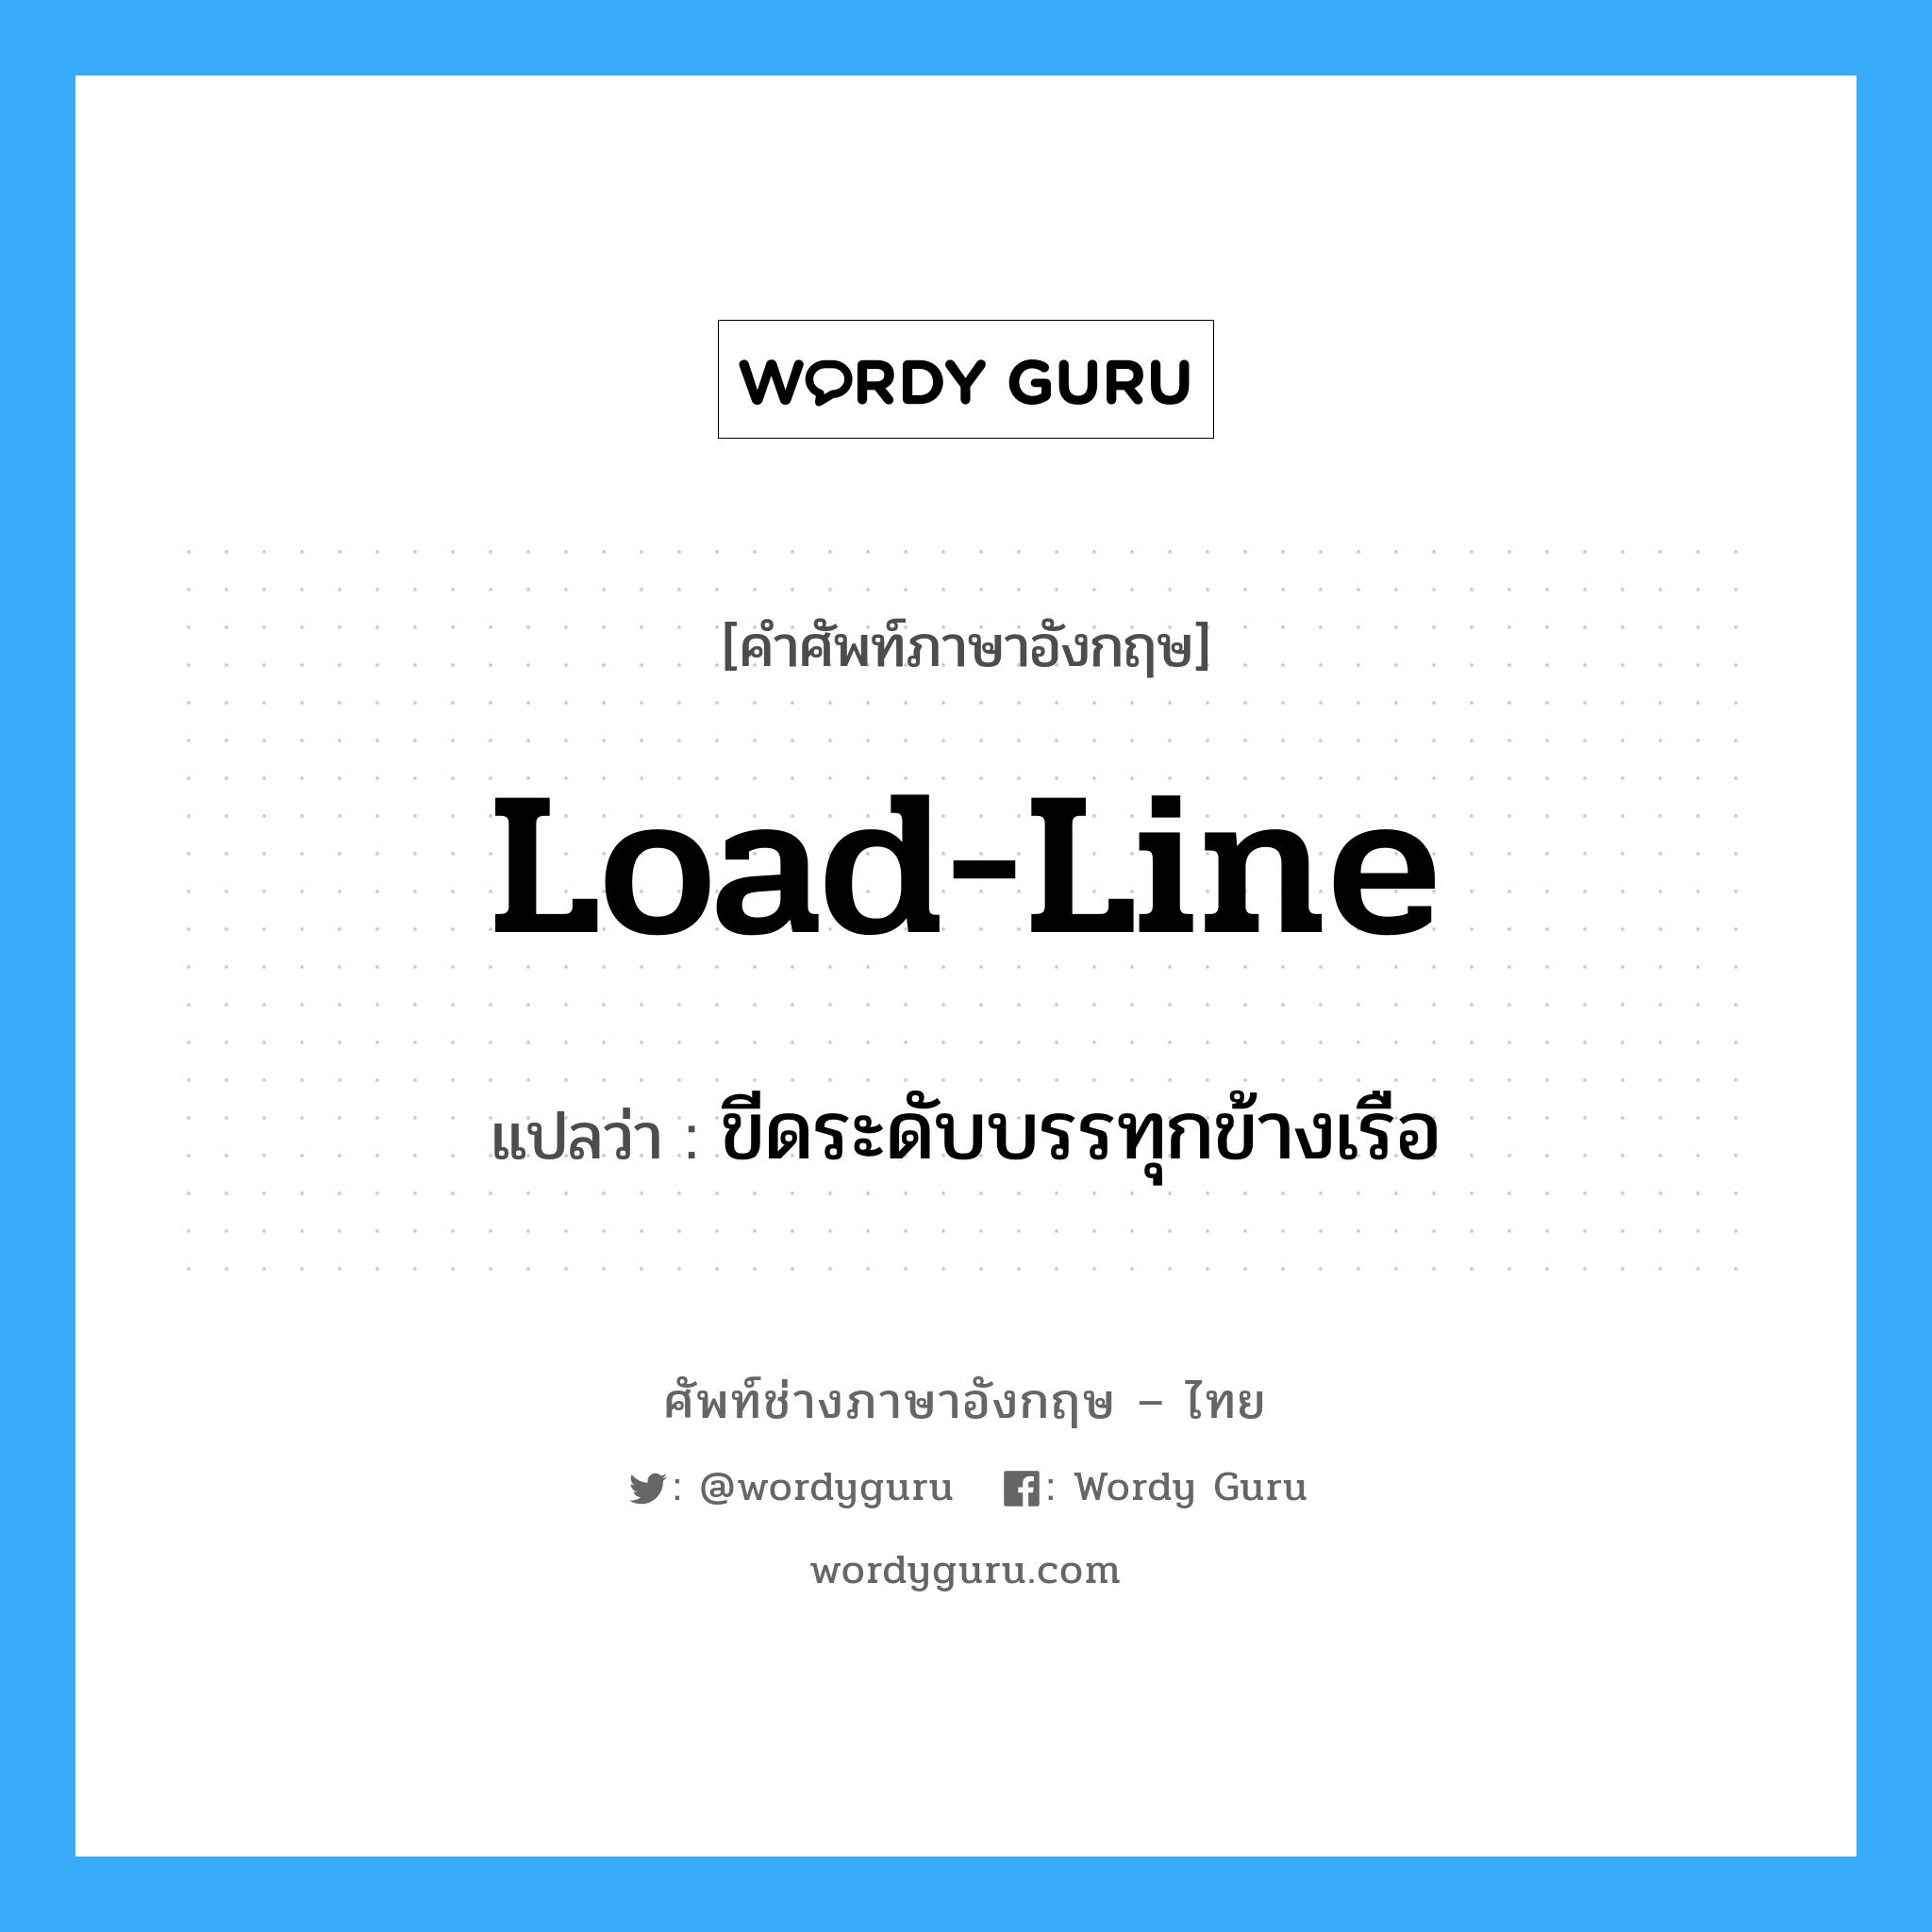 load-line แปลว่า?, คำศัพท์ช่างภาษาอังกฤษ - ไทย load-line คำศัพท์ภาษาอังกฤษ load-line แปลว่า ขีดระดับบรรทุกข้างเรือ